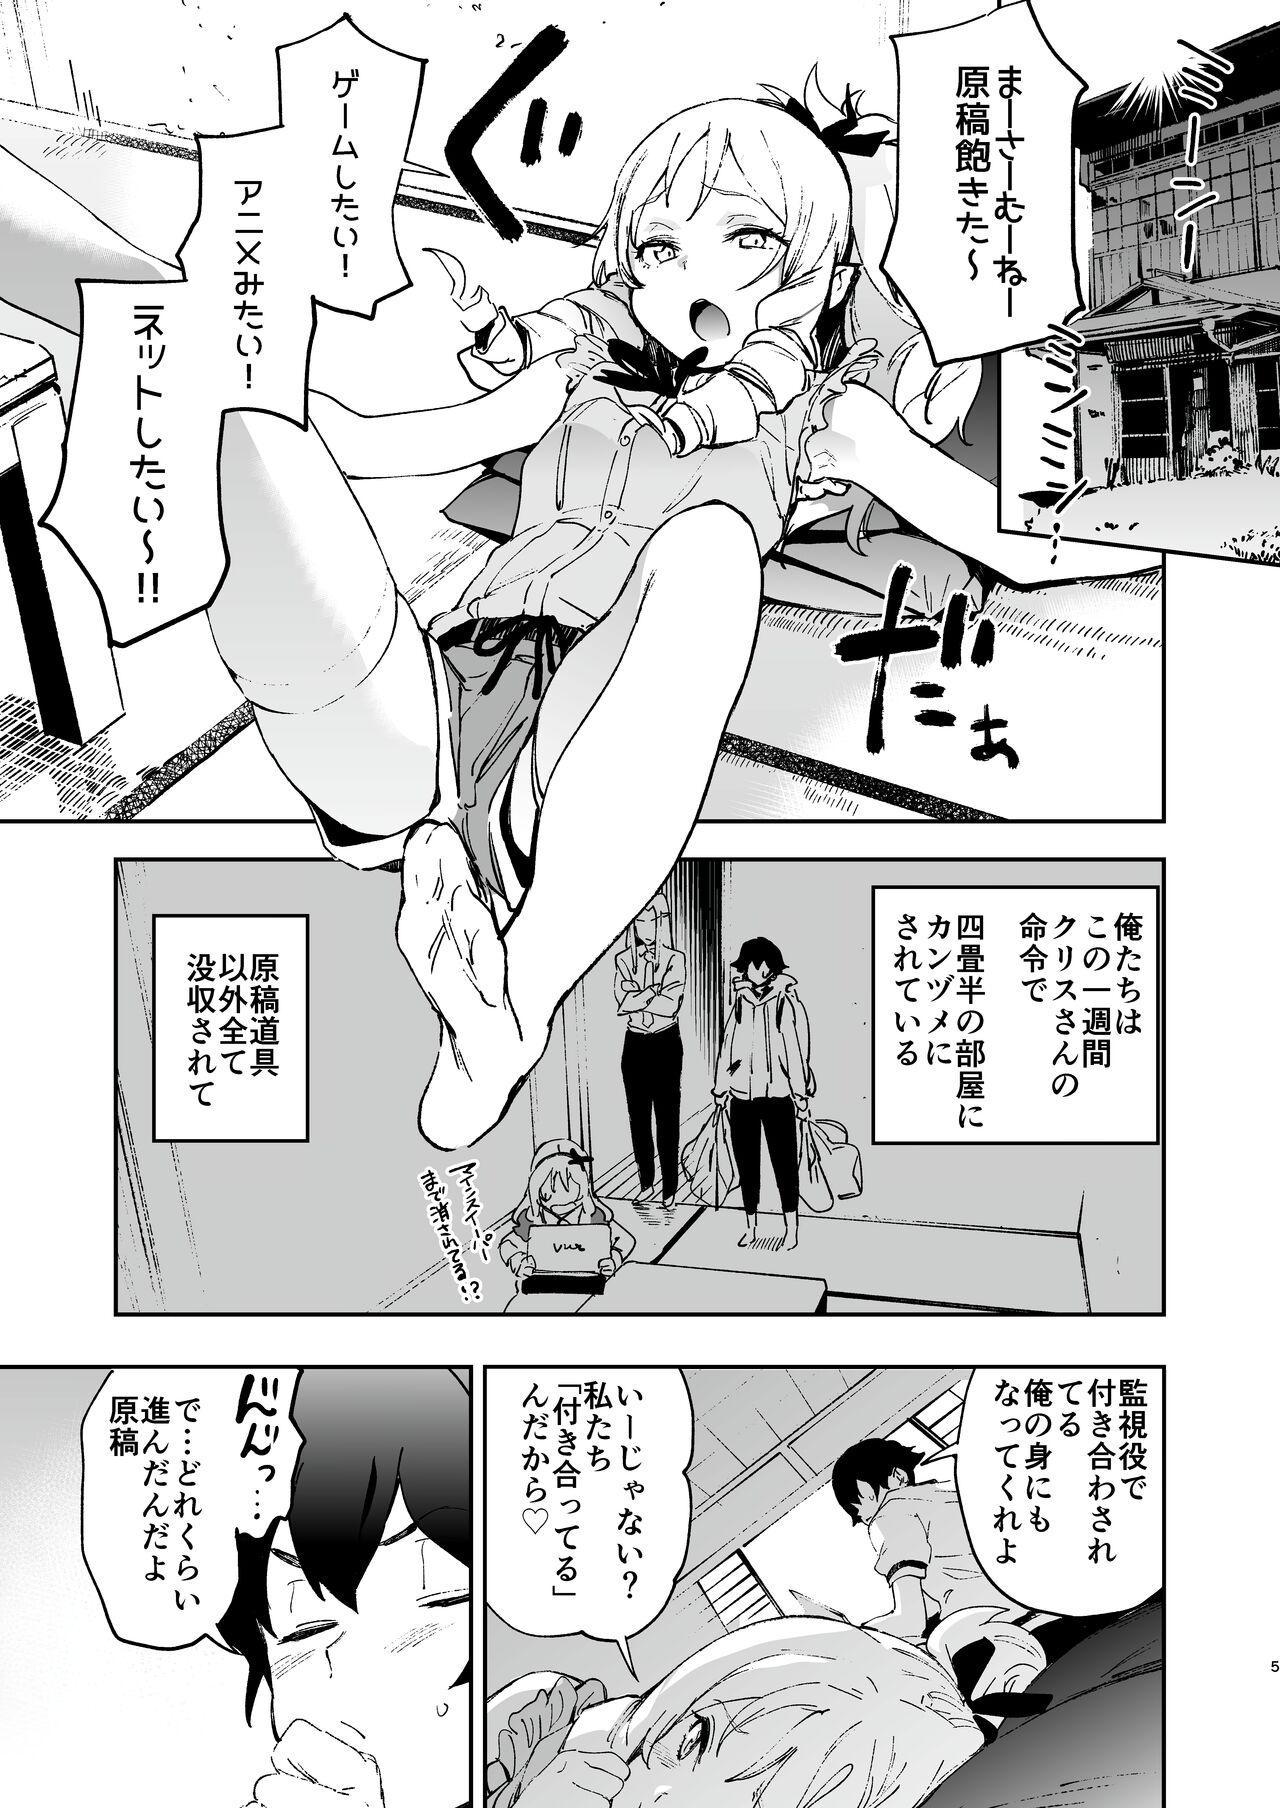 Cocks Yamada Elf-sensei no Yaruki SEX Fire - Eromanga sensei Siririca - Page 4